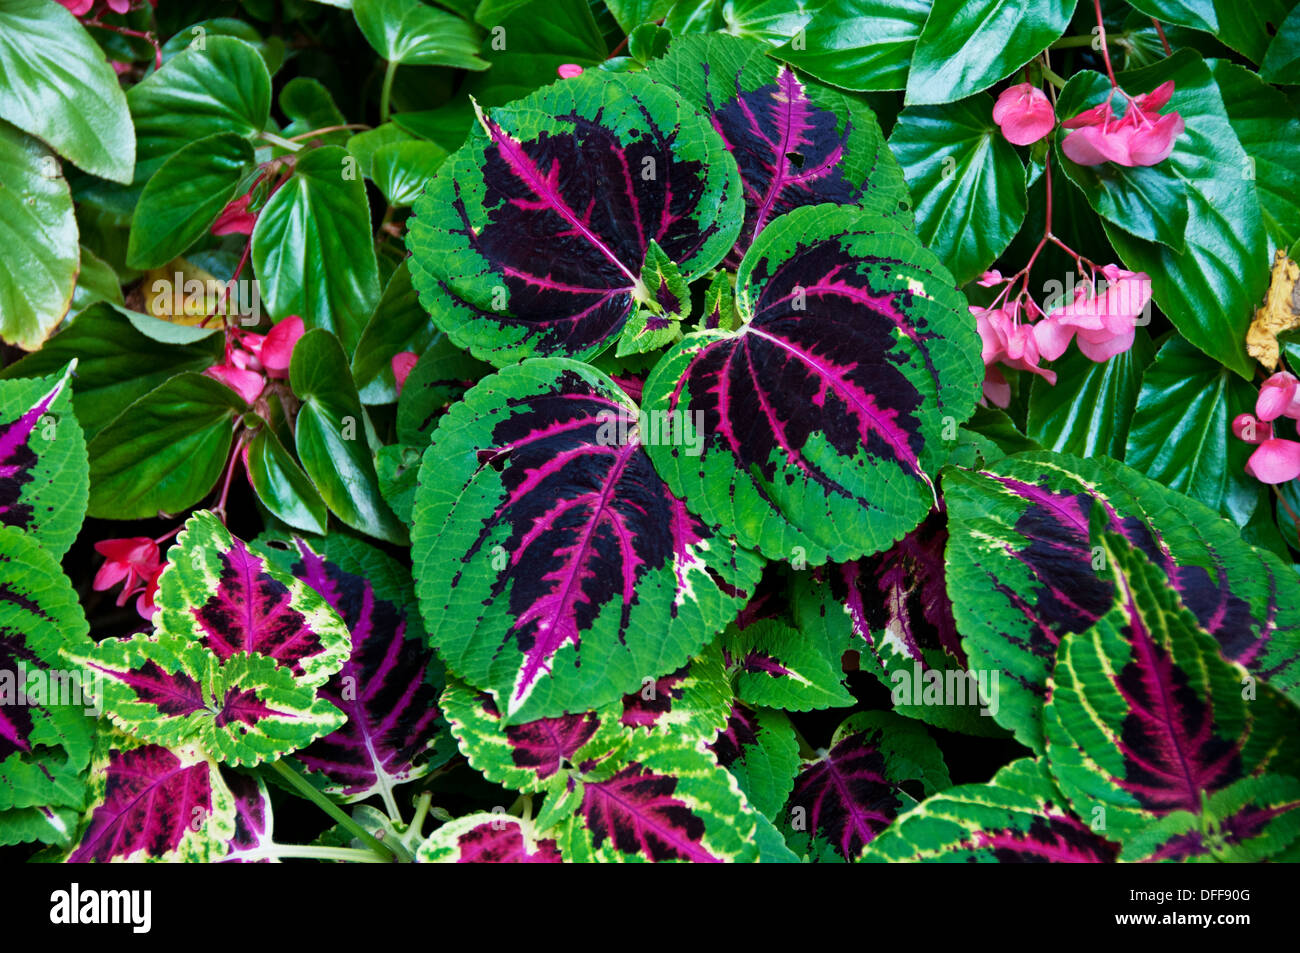 Coleus plant leaves Stock Photo